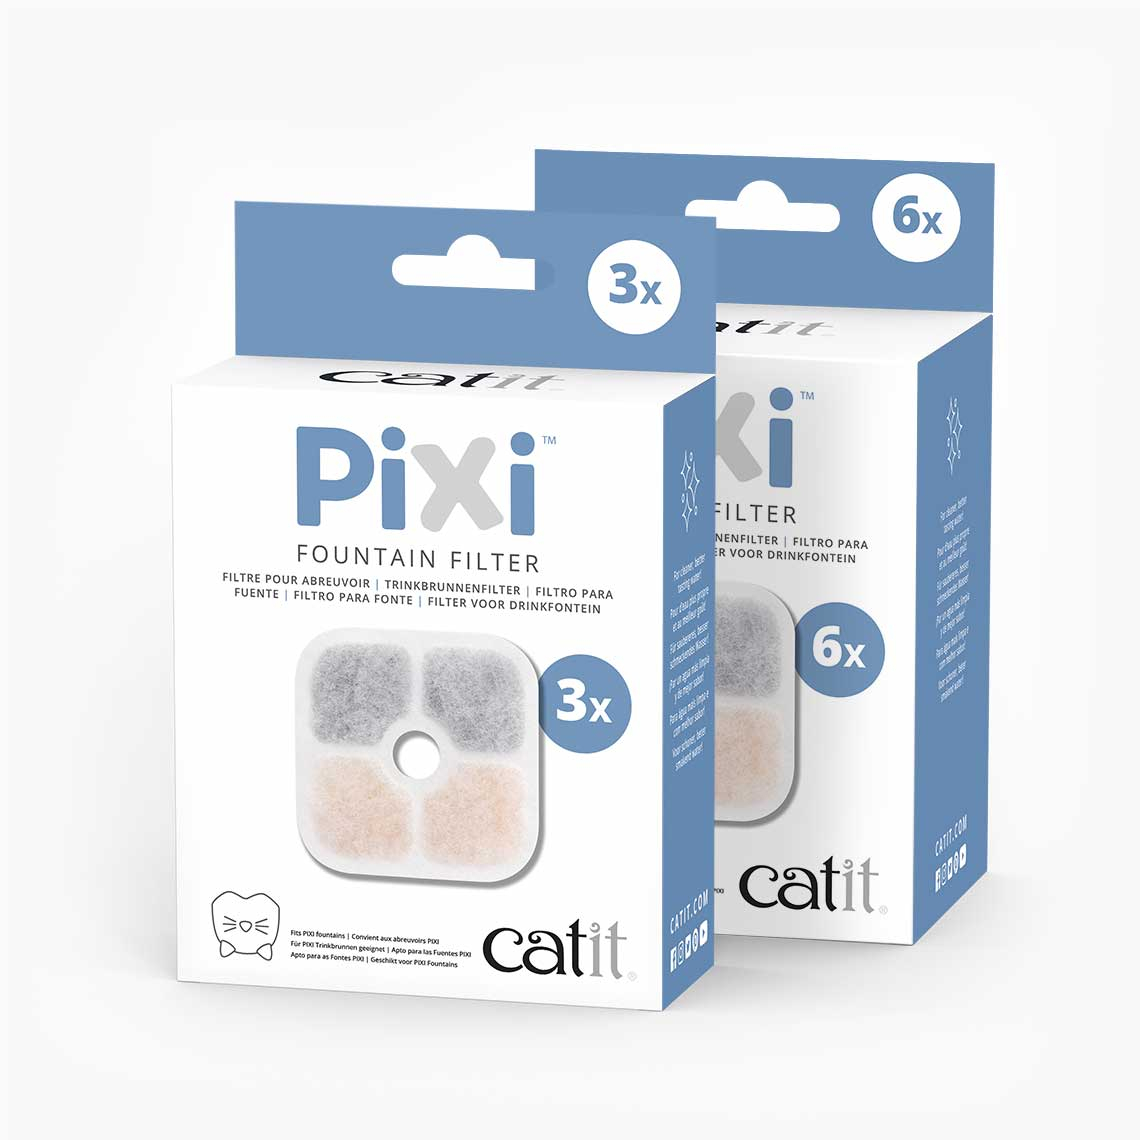 Catit Pixi Filter für Trinkbrunnen - 3 oder 6 Stück